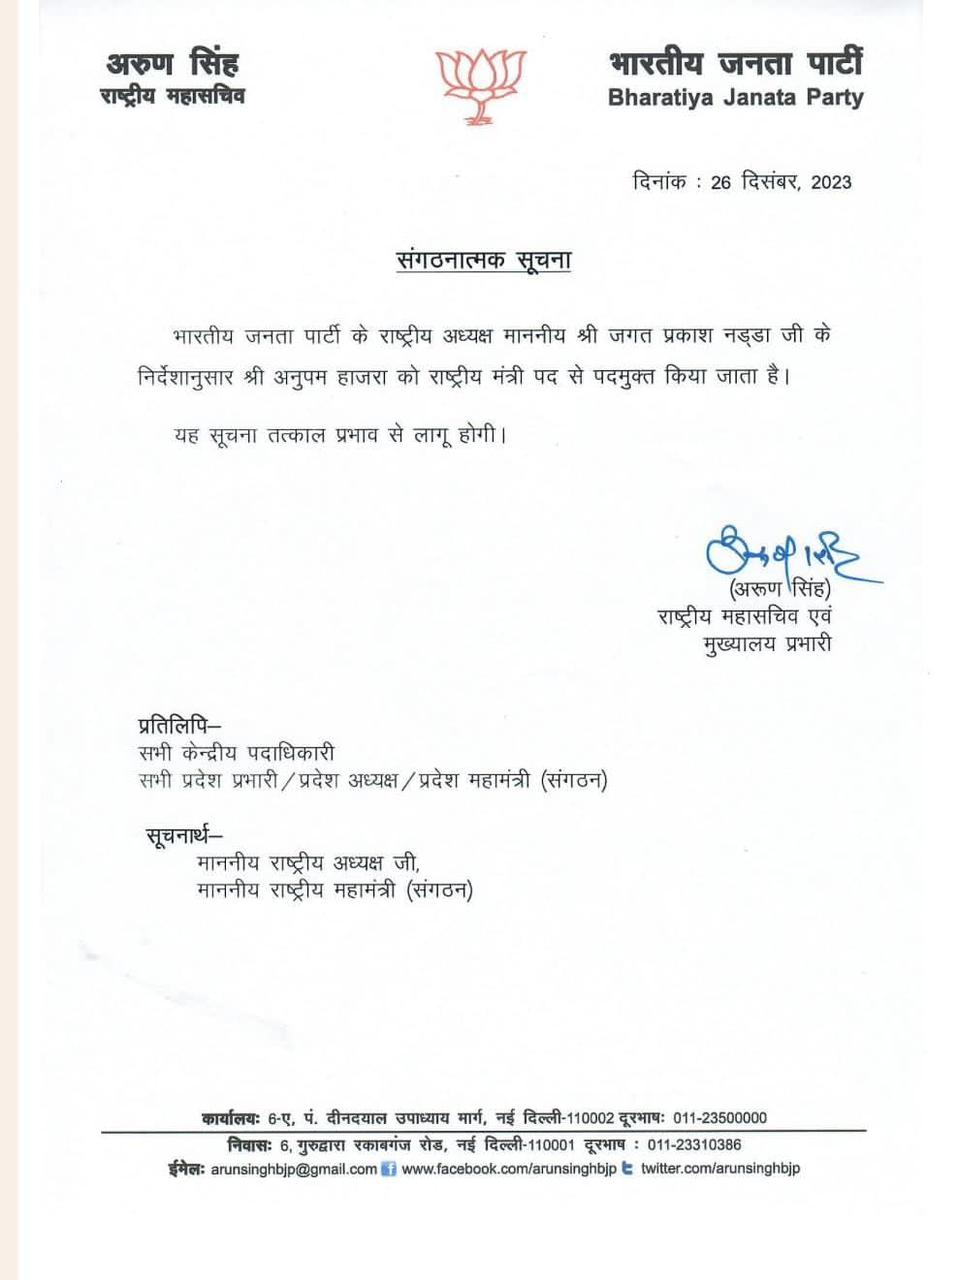 बीजेपी ने अनुपम हाजरा को राष्ट्रीय मंत्री पद से हटाया, जारी किया नोटिस